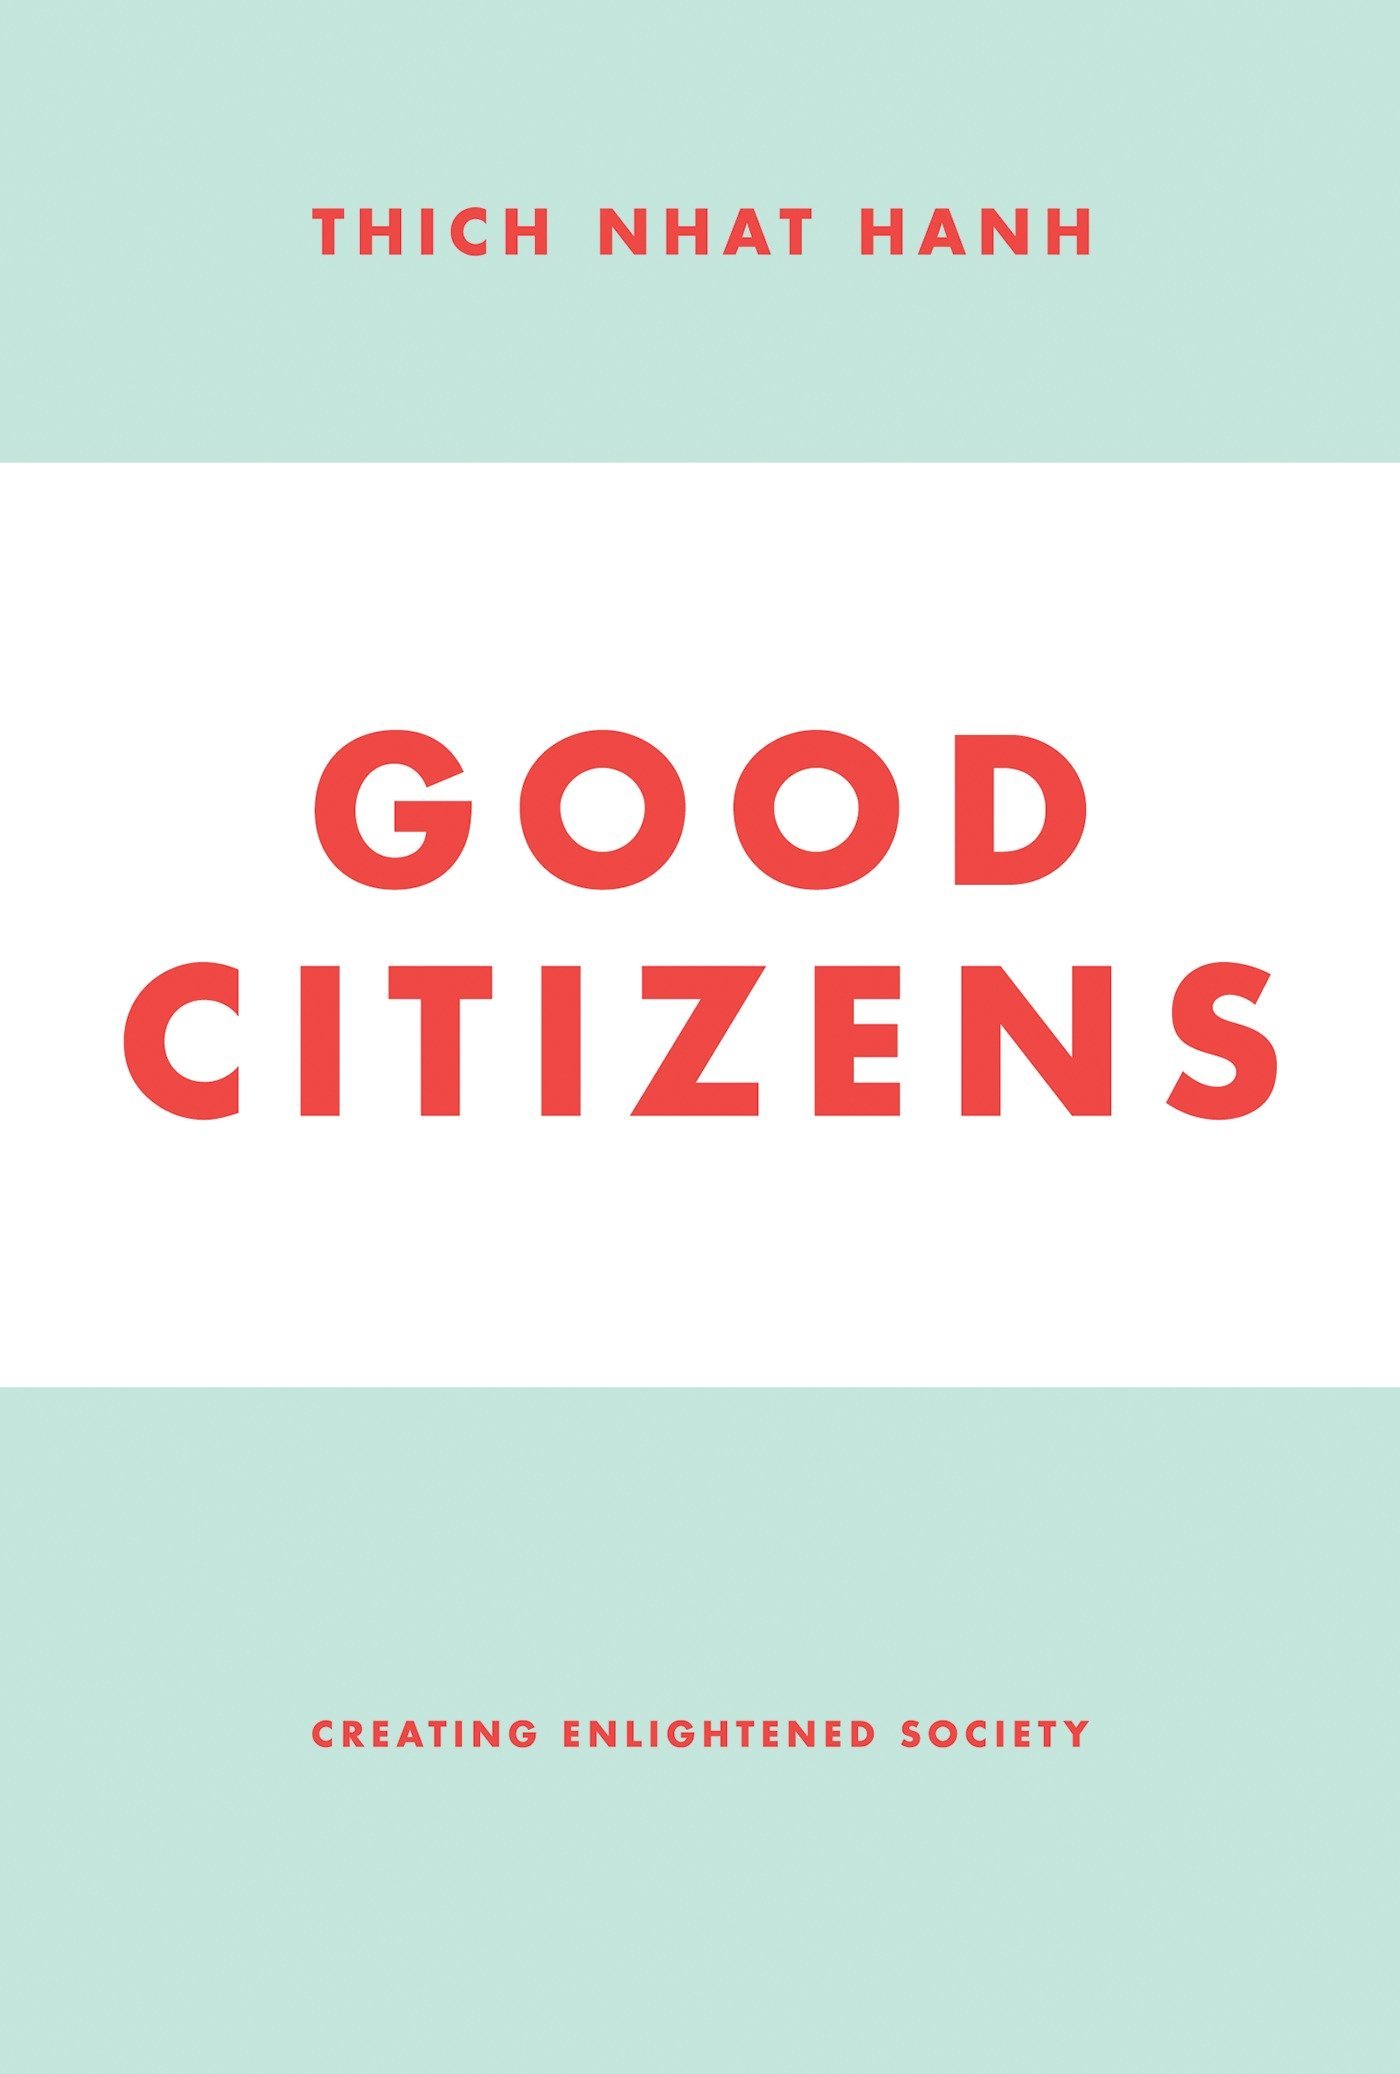 Good citizens (2012, Parallax Press)